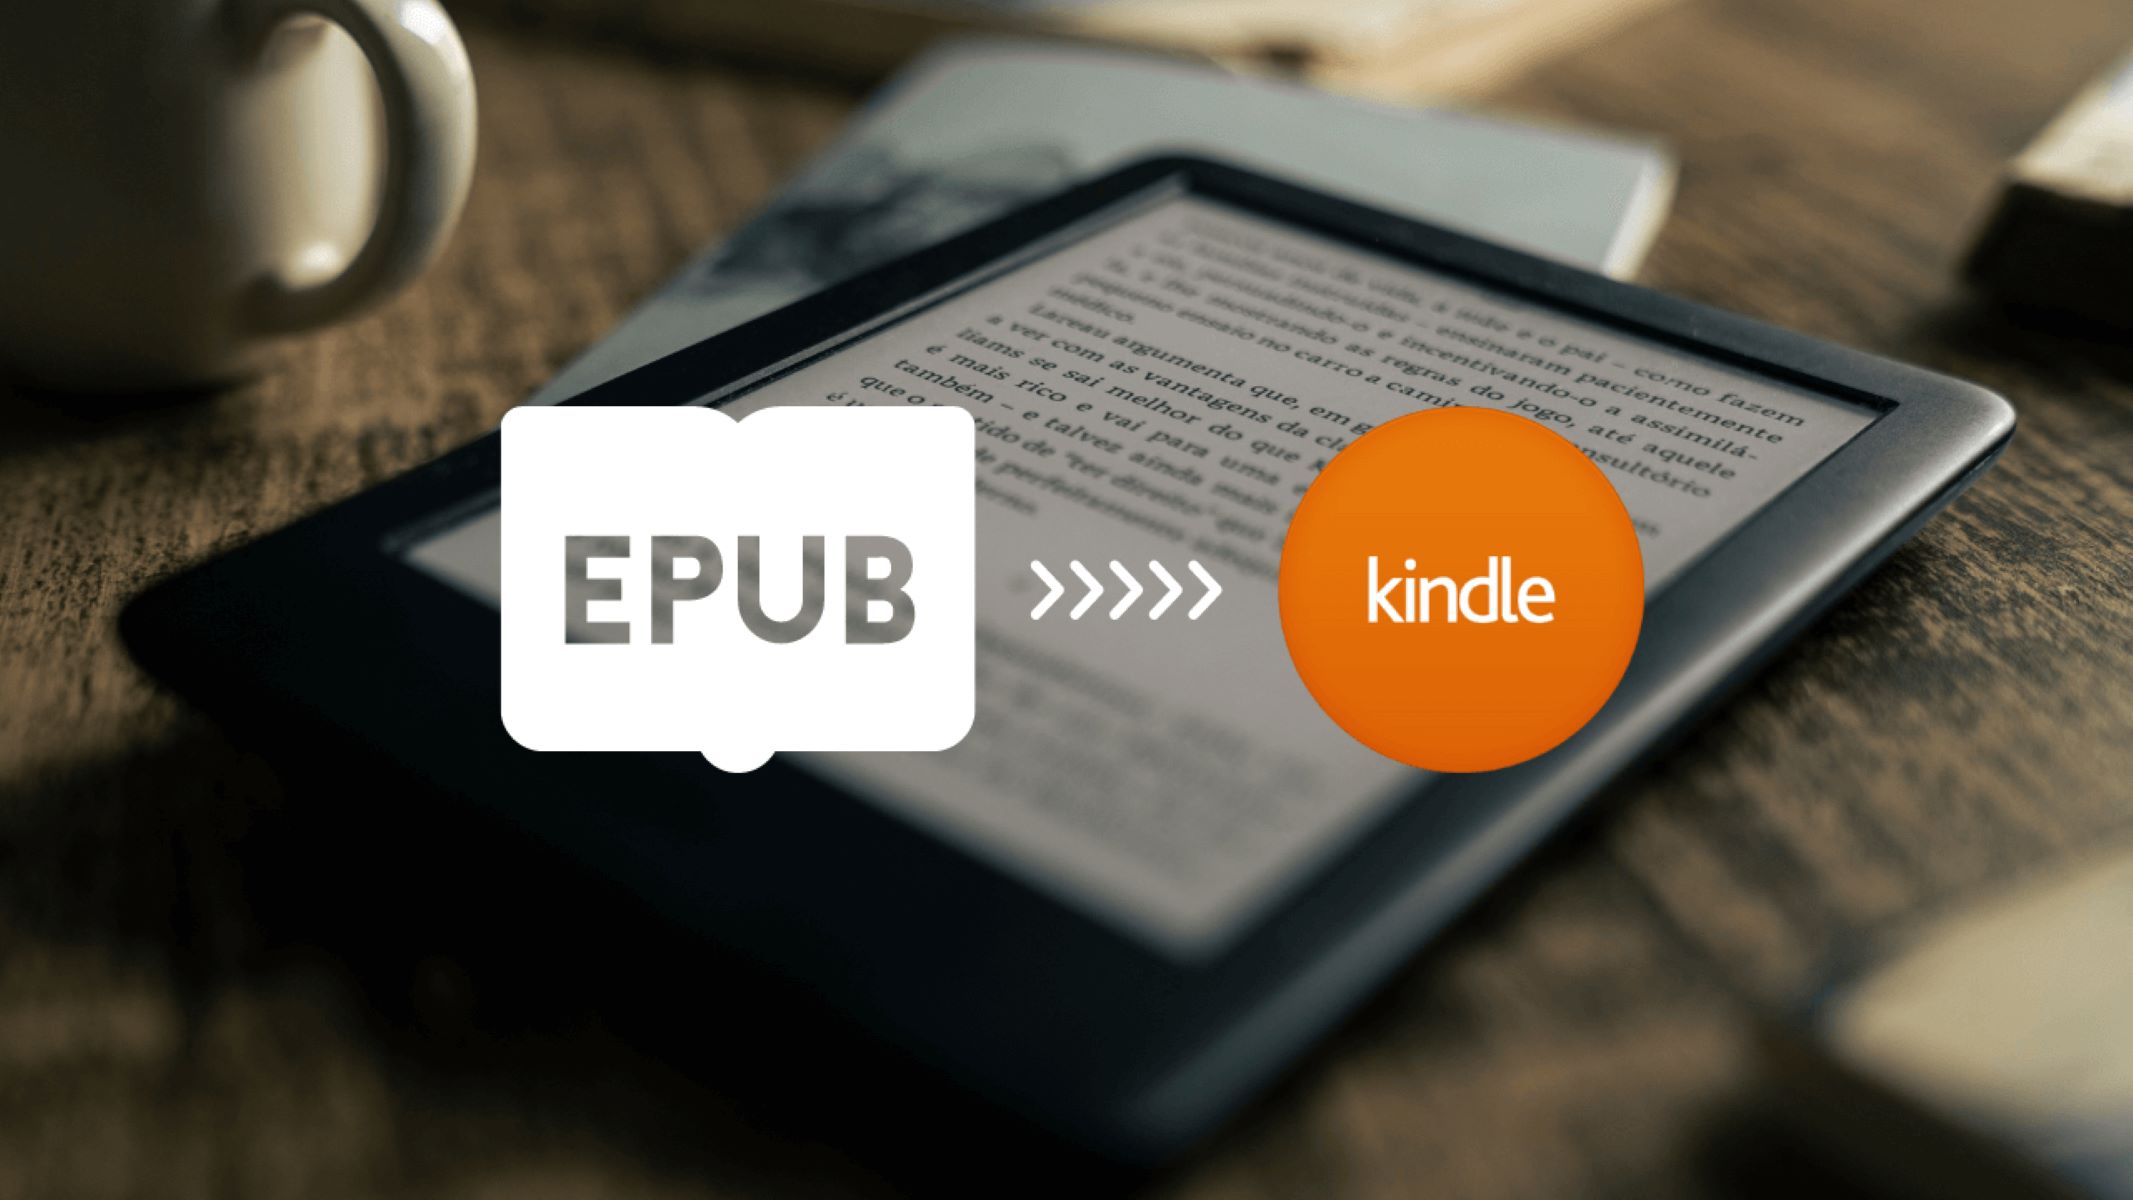 How To Send An EPUB To Kindle